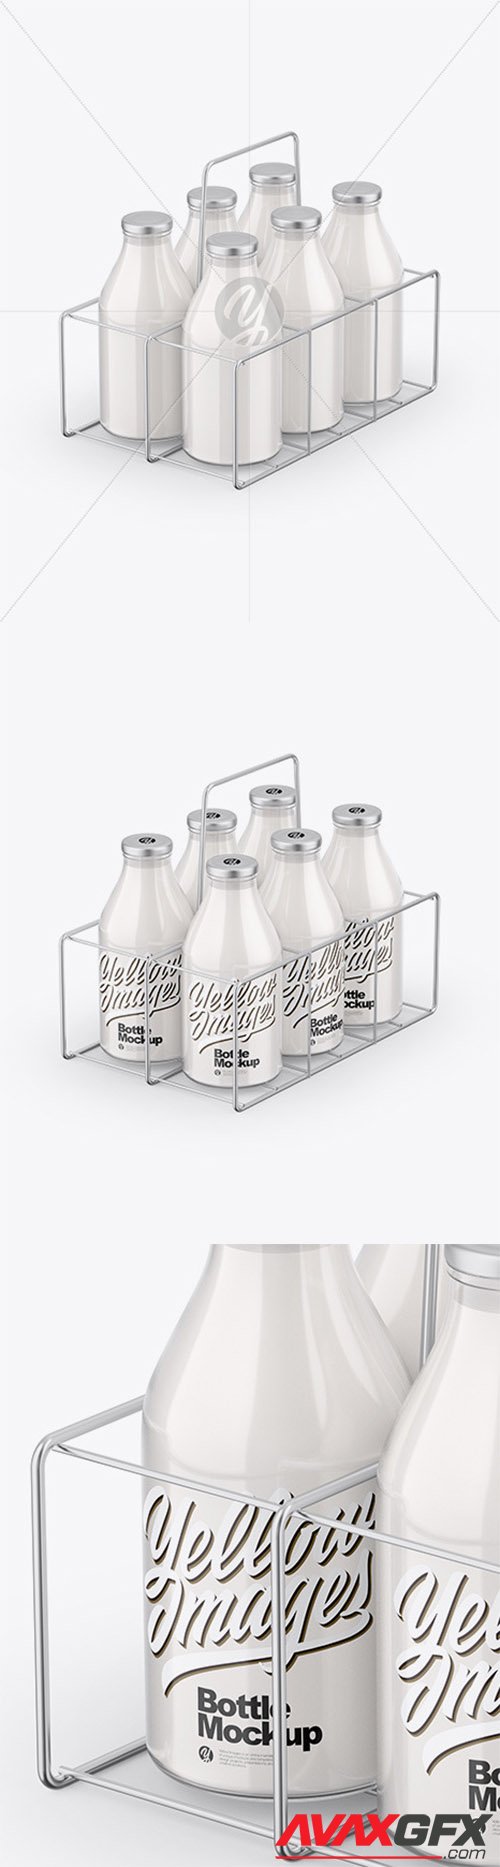 6 Milk Bottles Carrier Mockup 83990 TIF